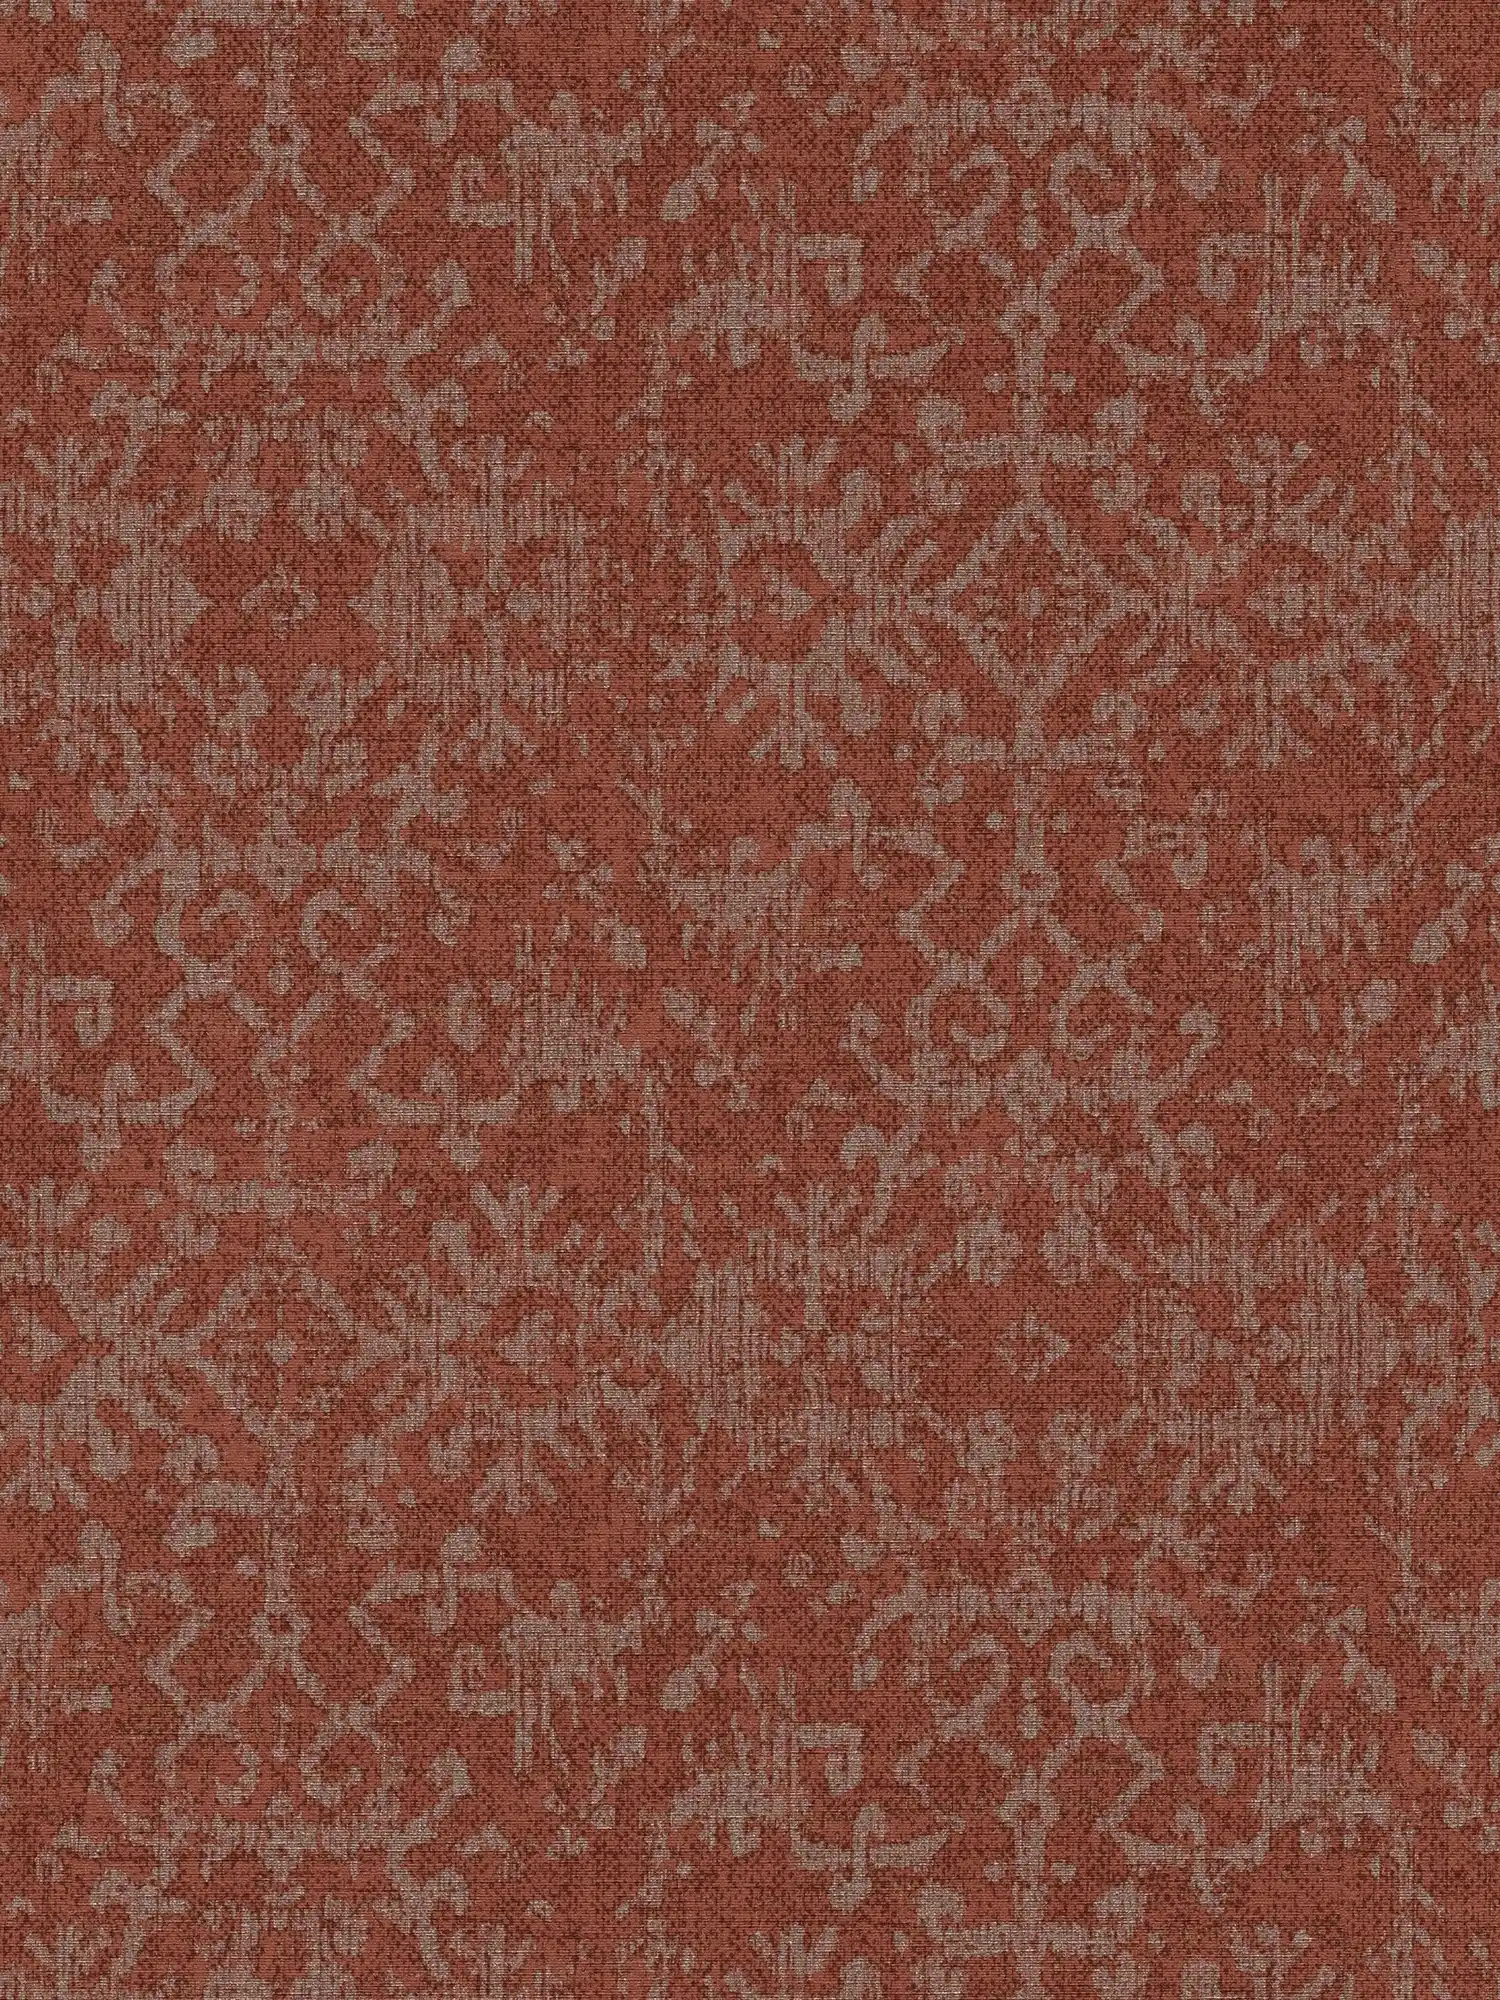 Behangornamentontwerp in Perzische tapijtlook
